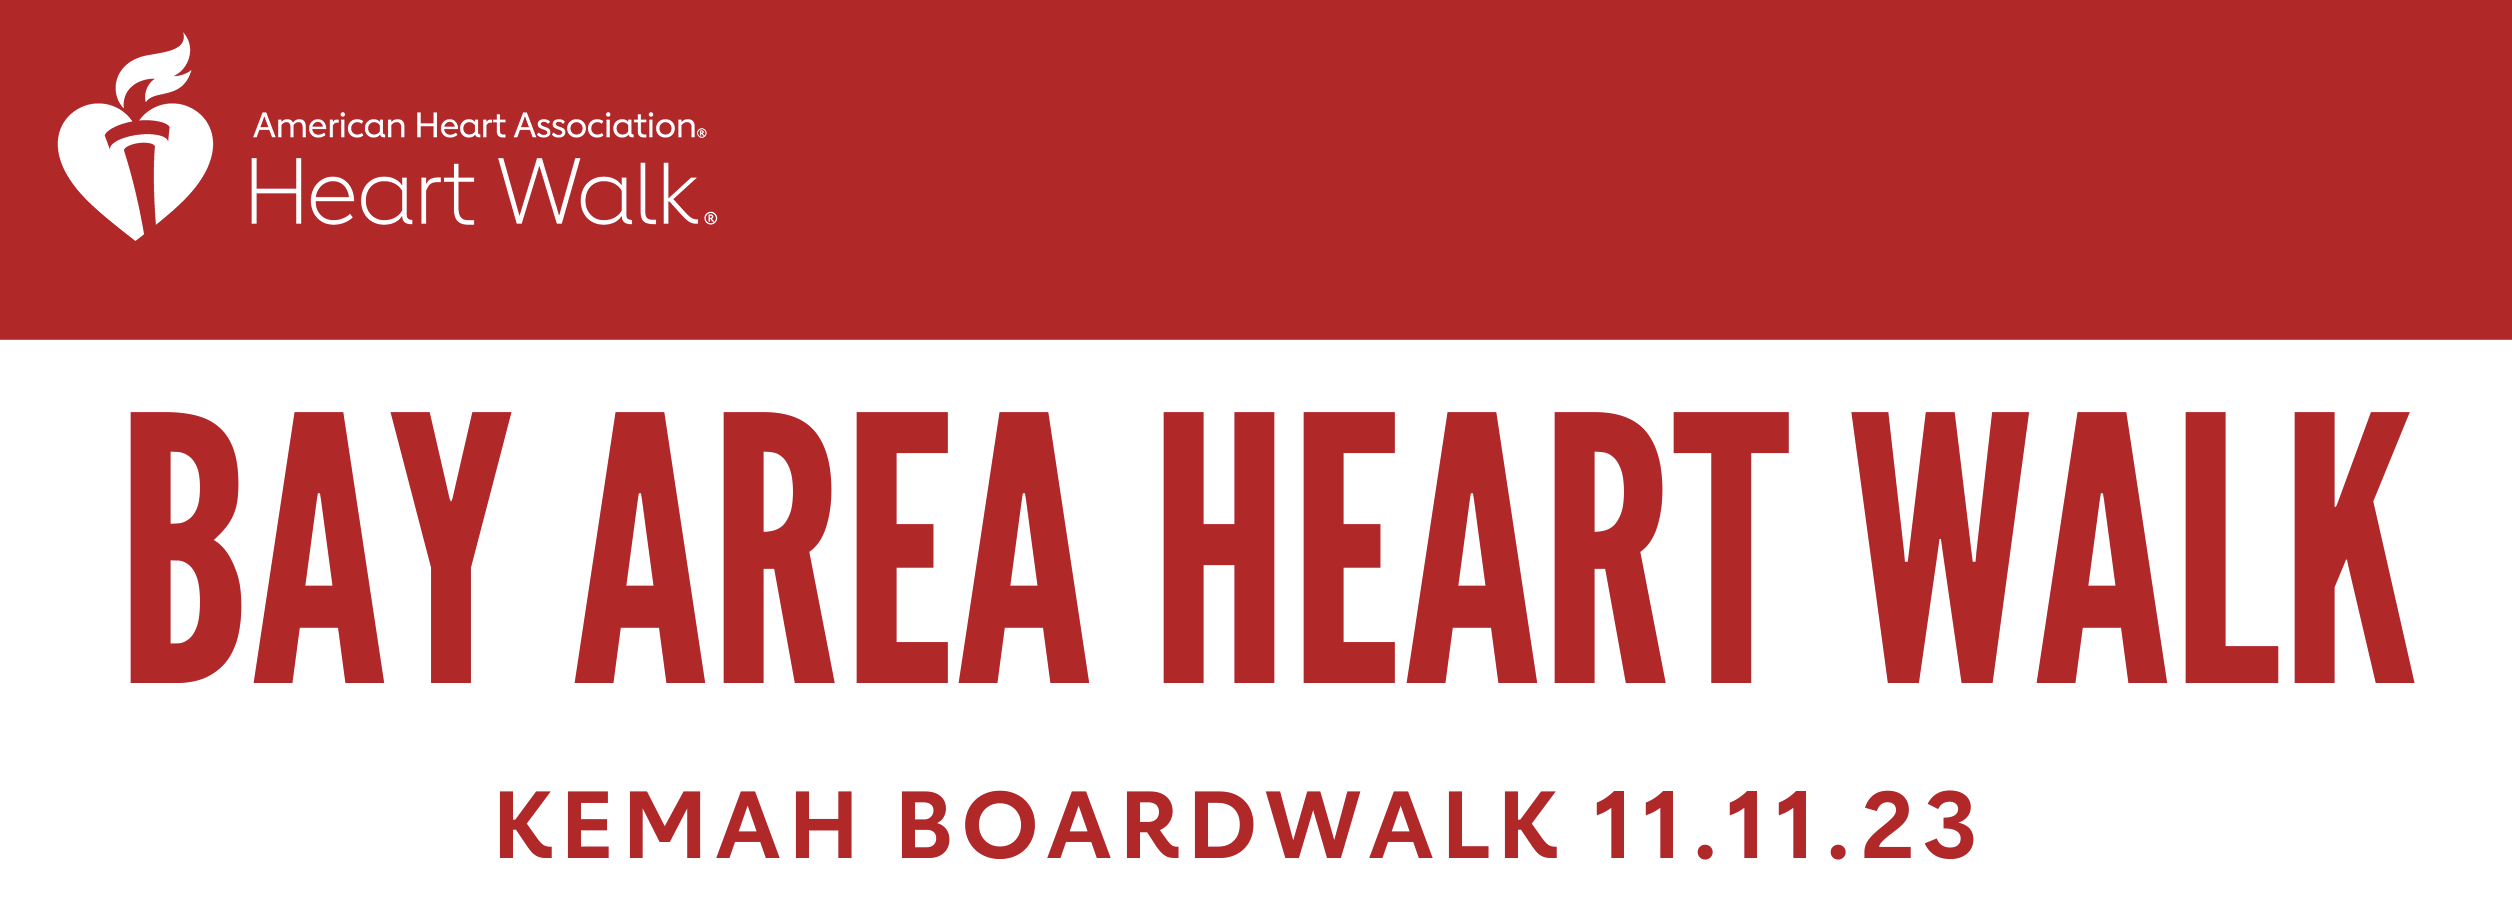 Bay Area Heart Walk banner